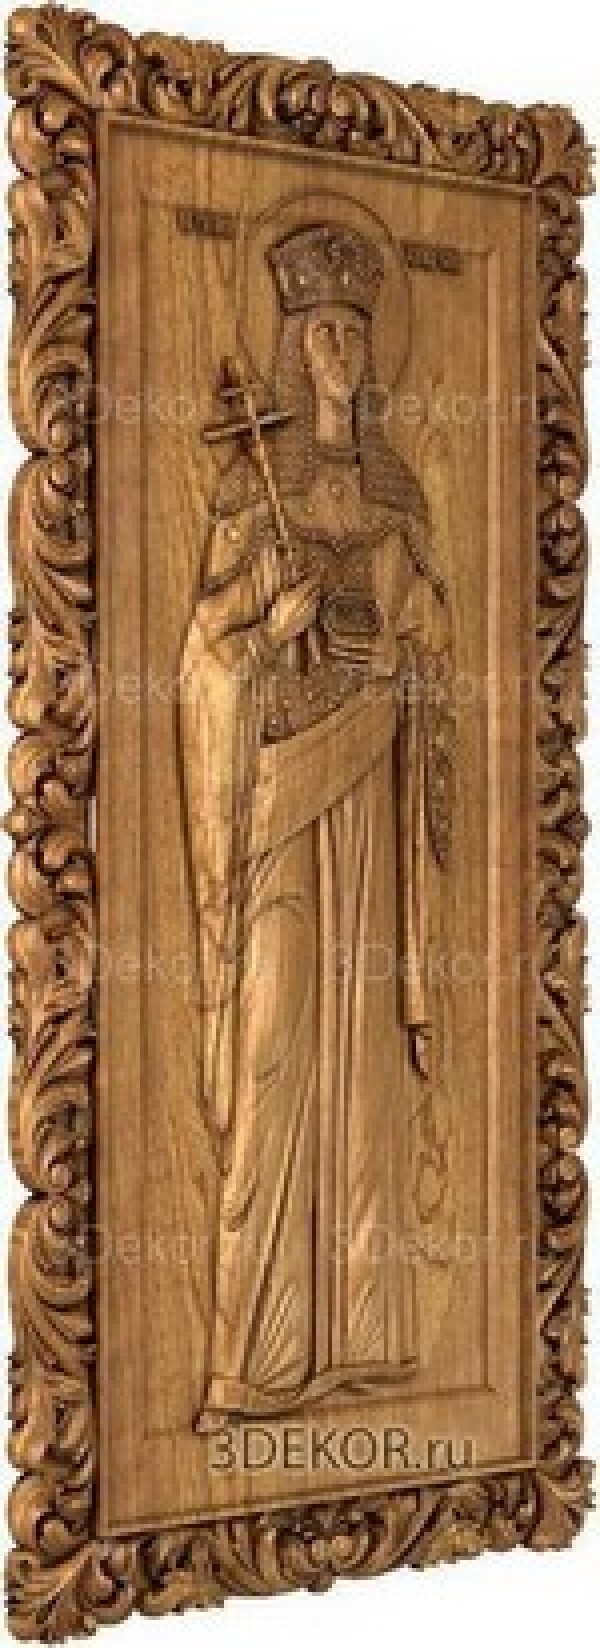 Икона Святая Равноапостольная царица Елена